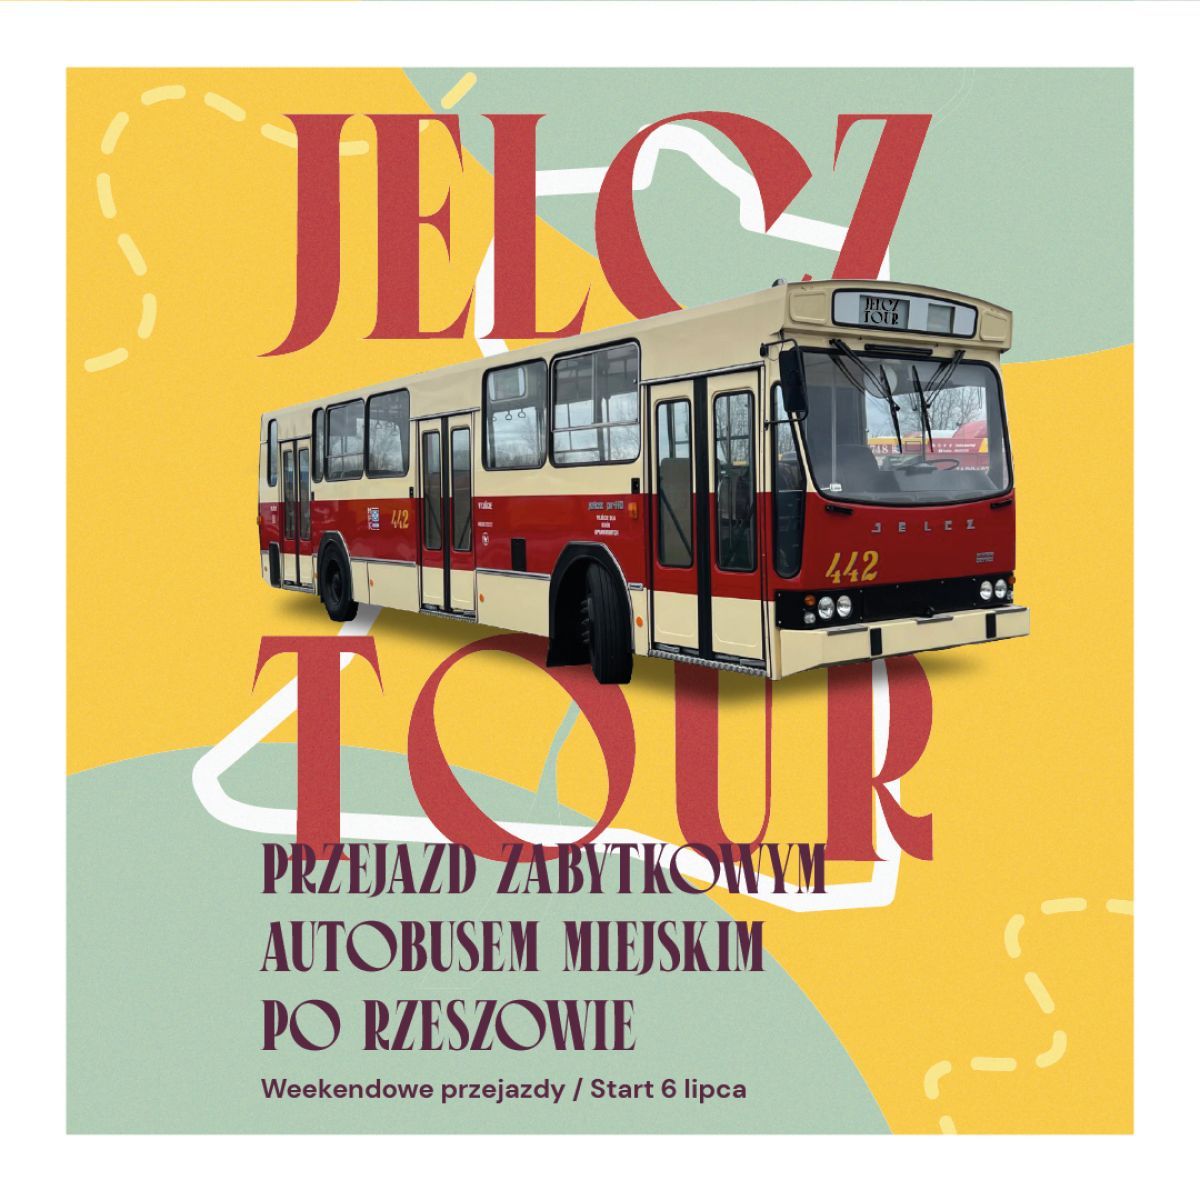 Jelcz-Laskowice: Oni naprawdę kochają autobusy marki Jelcz